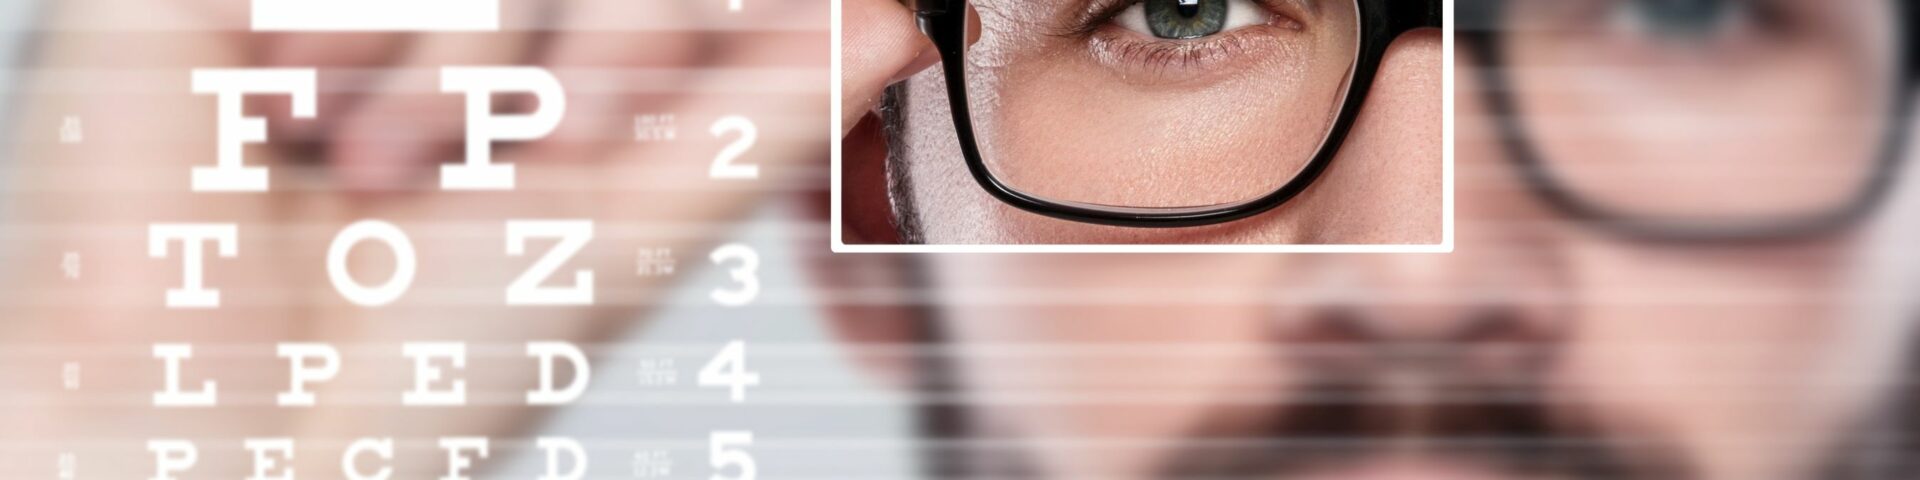 homen de oculos Alta miopia